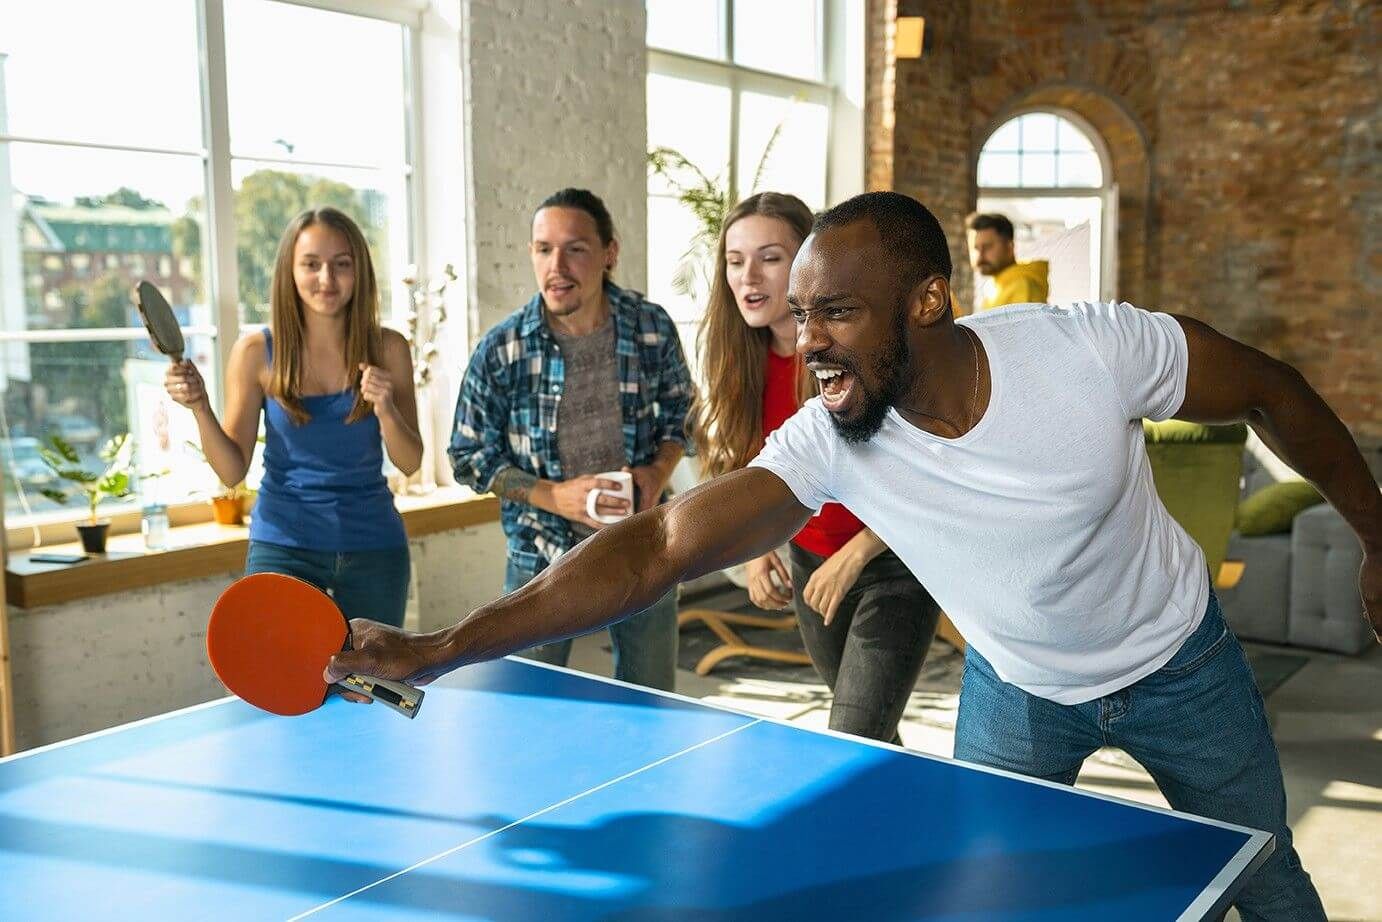 Balle de tennis de table : comment bien choisir ?